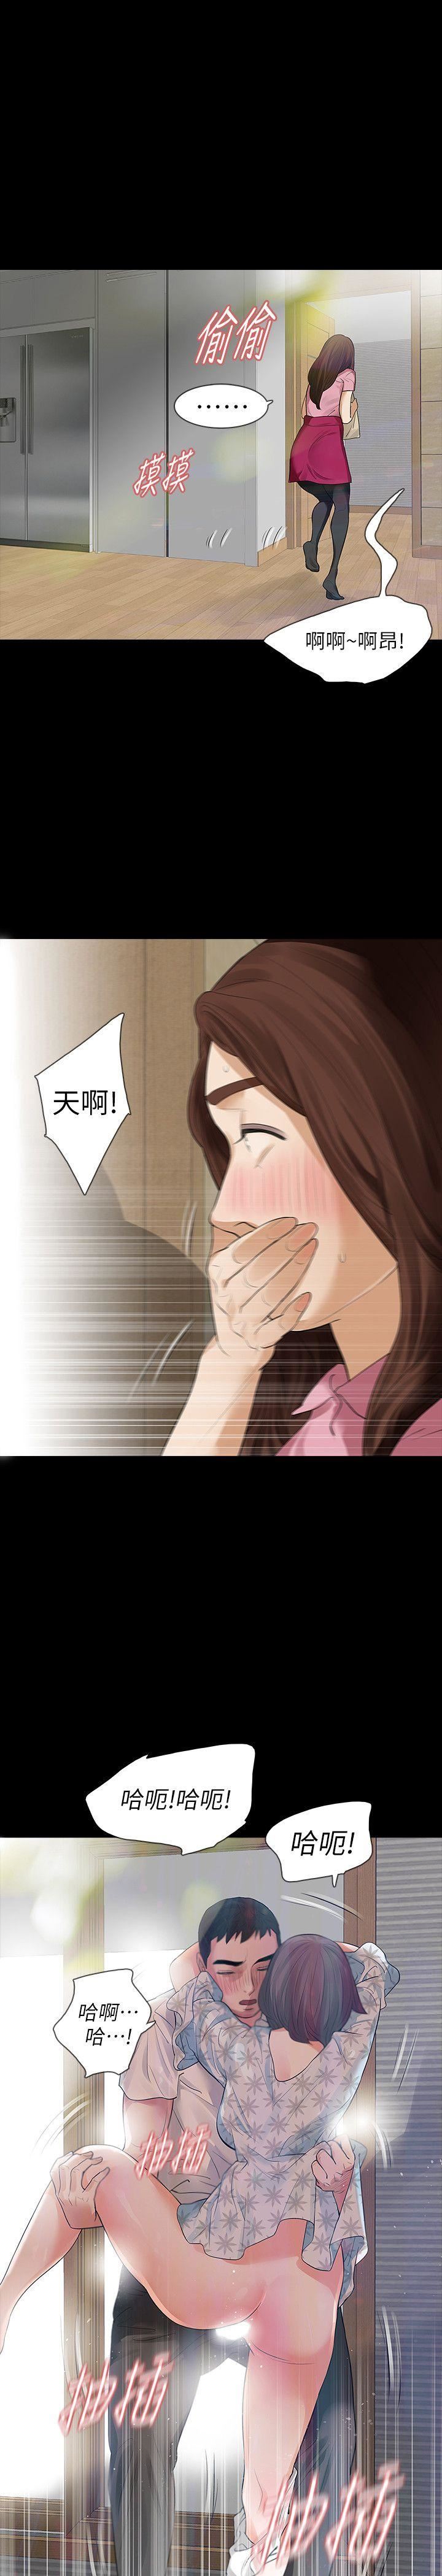 韩国污漫画 Revenge 第15话-被别人看到怎么办? 6